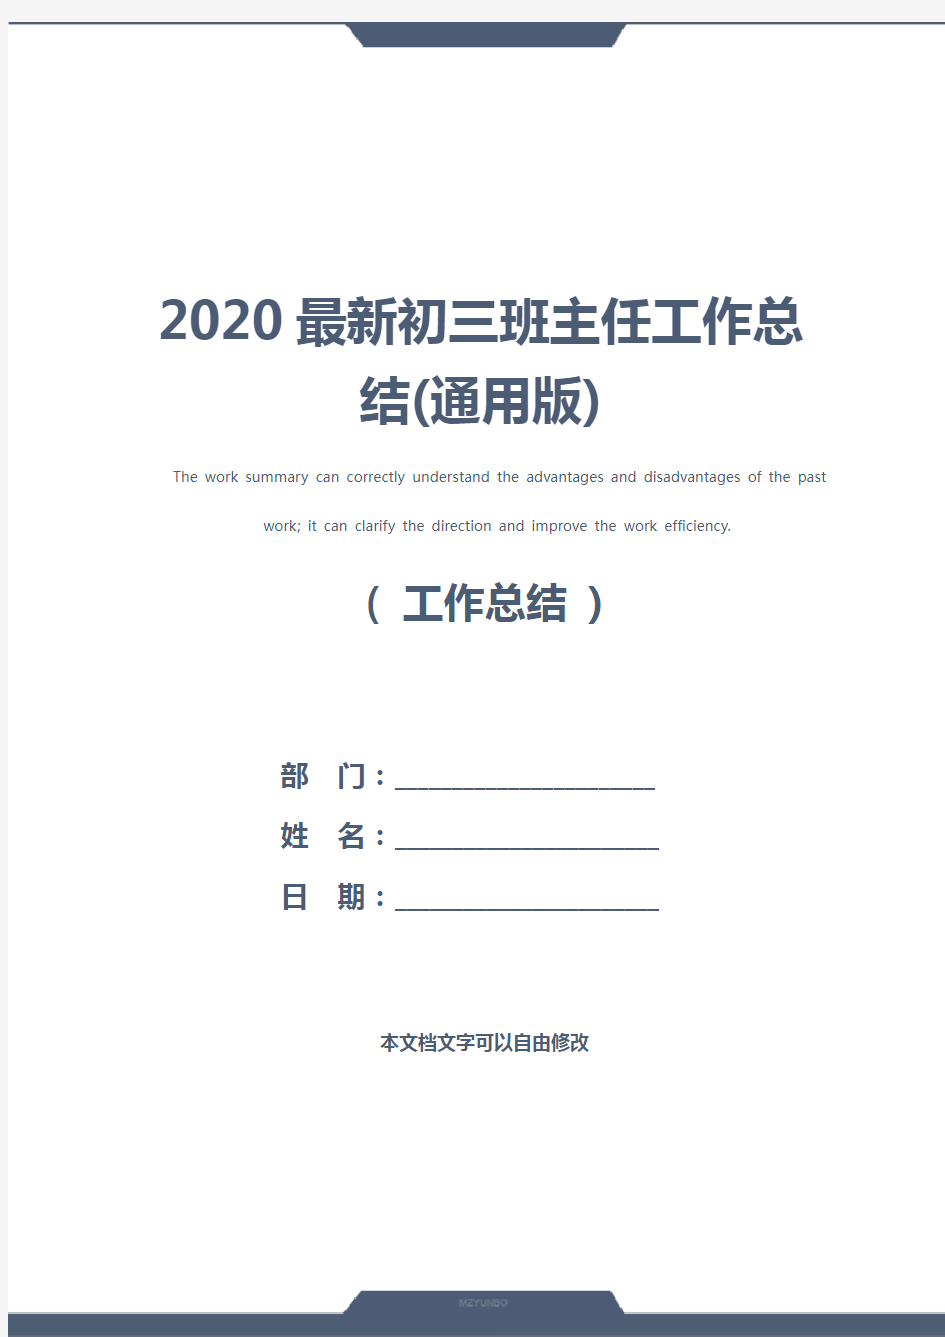 2020最新初三班主任工作总结(通用版)